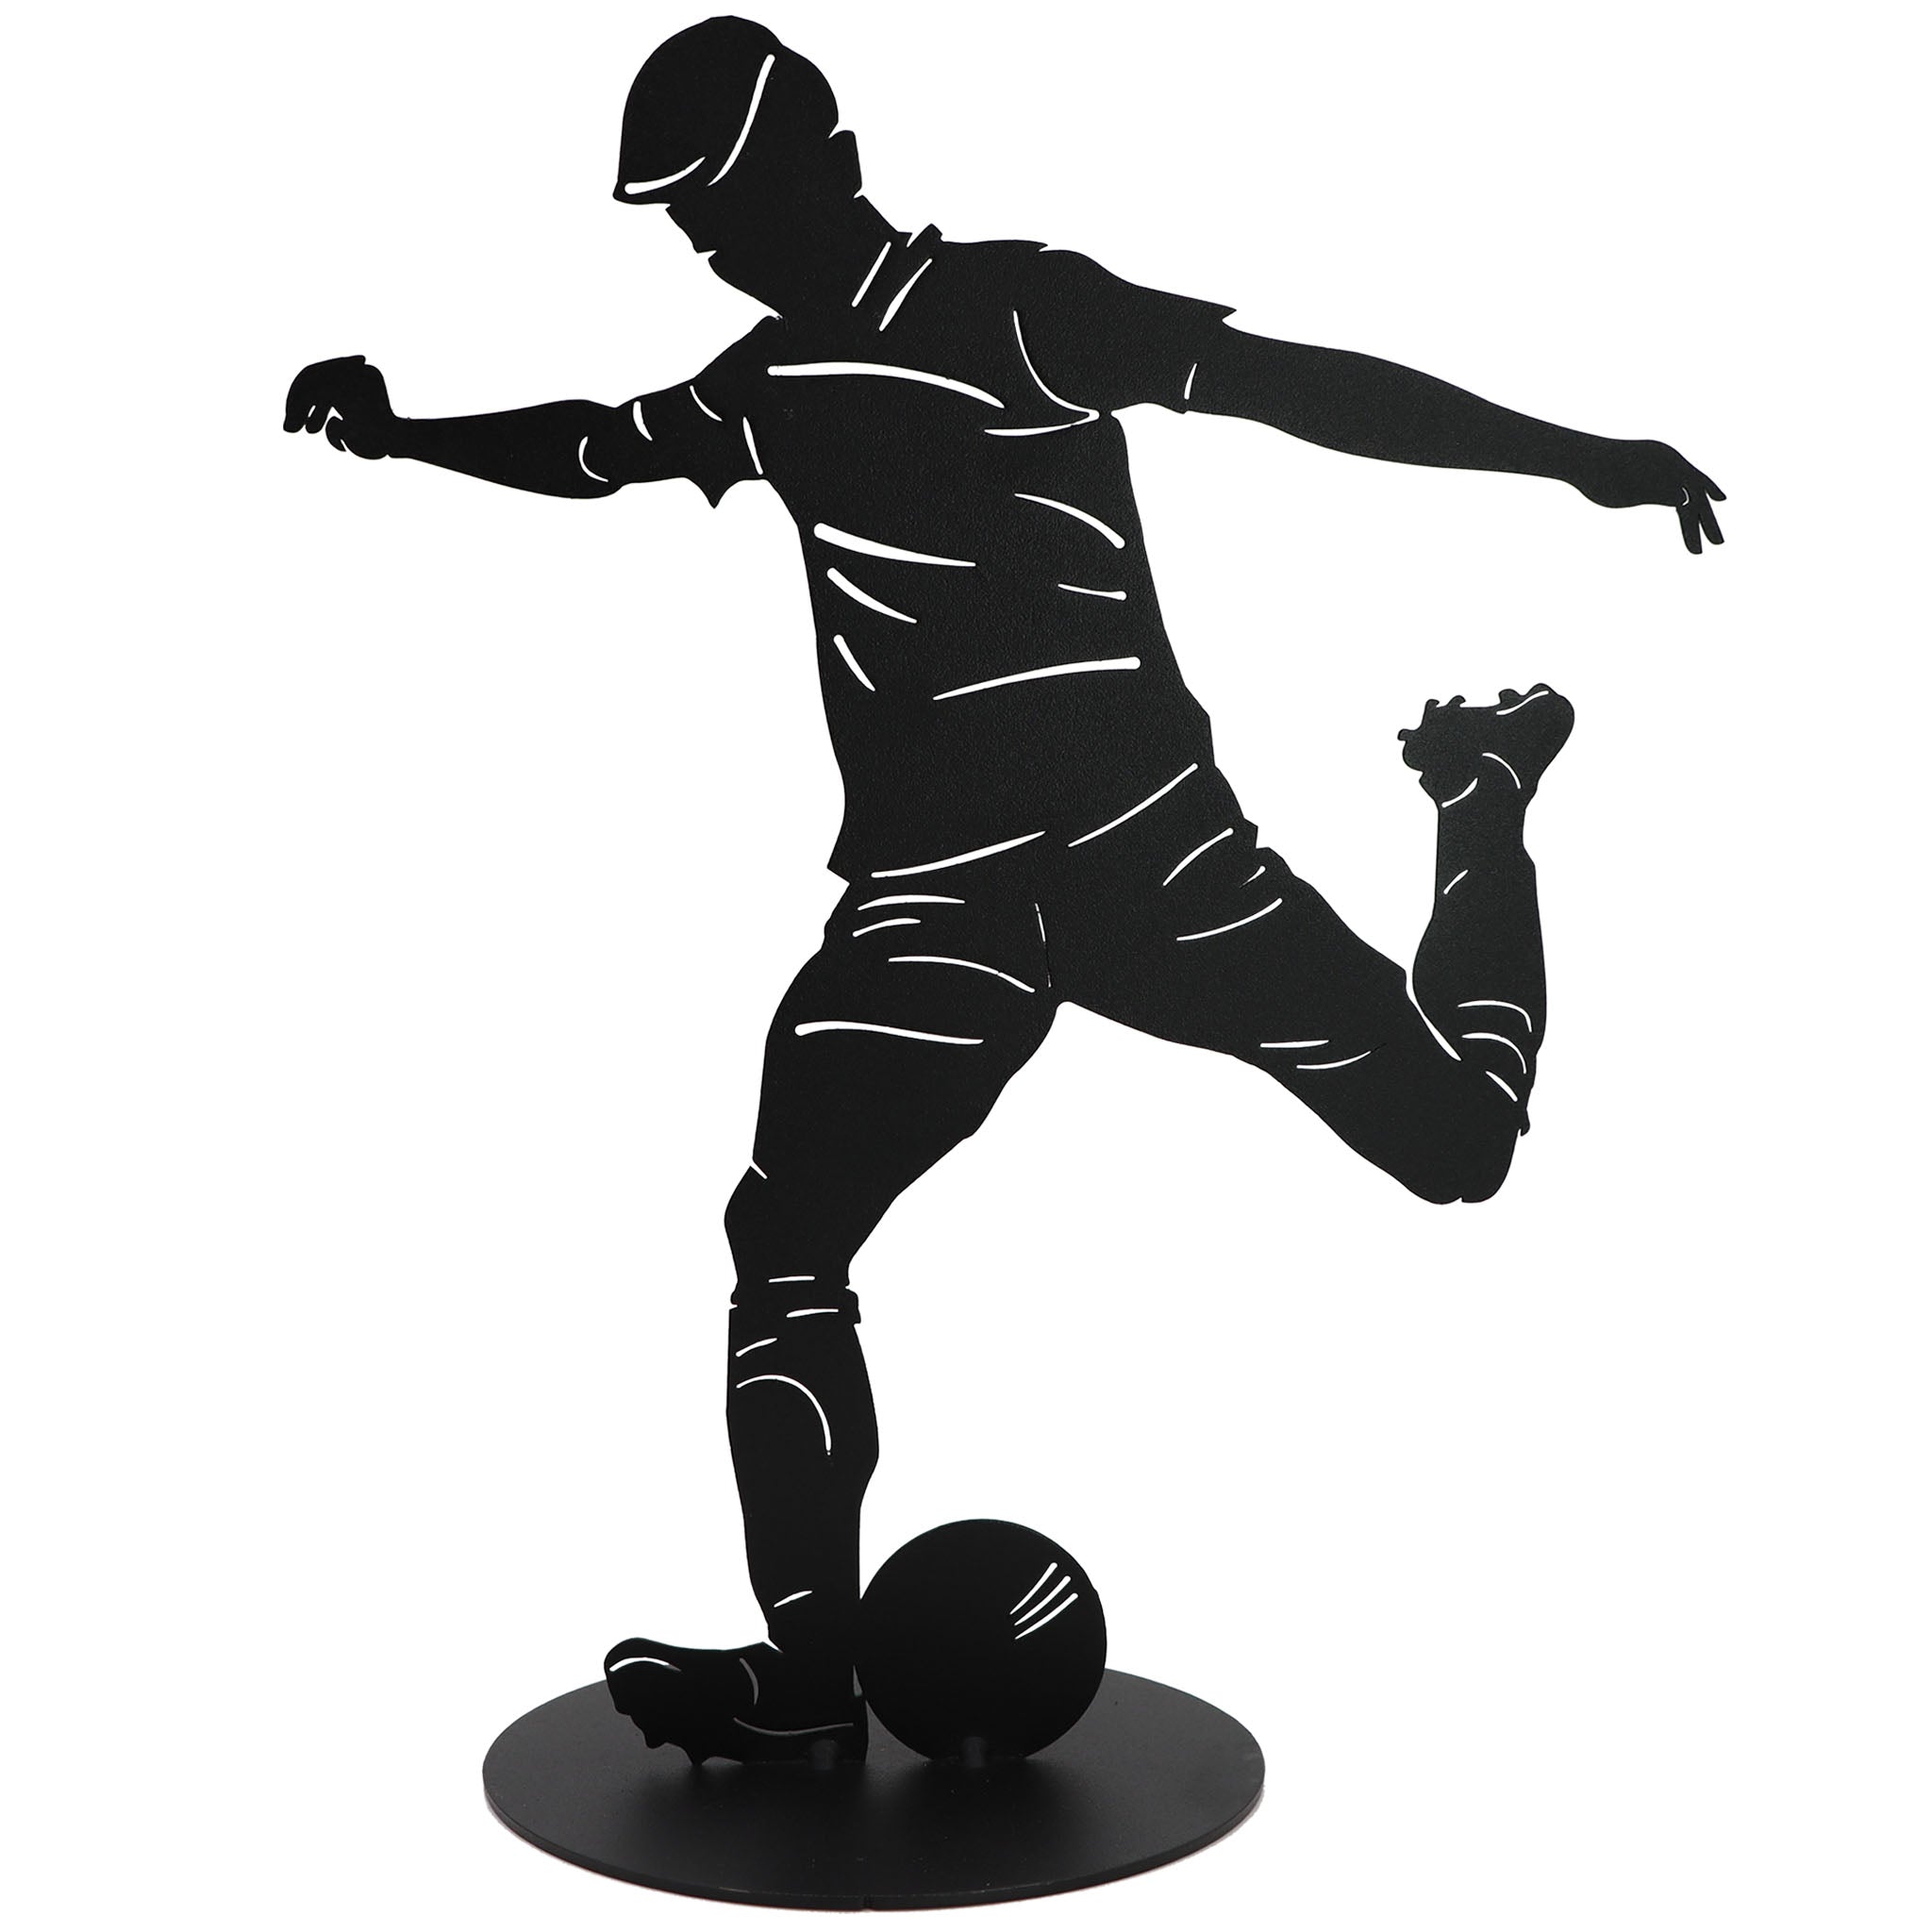 Schwarze, matt pulverbeschichtete Fußball Skulptur aus Metall, zeigt einen dynamischen Fußballspieler in Aktion mit einem Ball am Fuß. Die Figur steht stabil auf einer runden Bodenplatte und ist sowohl für Innen- als auch Außenbereiche ideal geeignet.